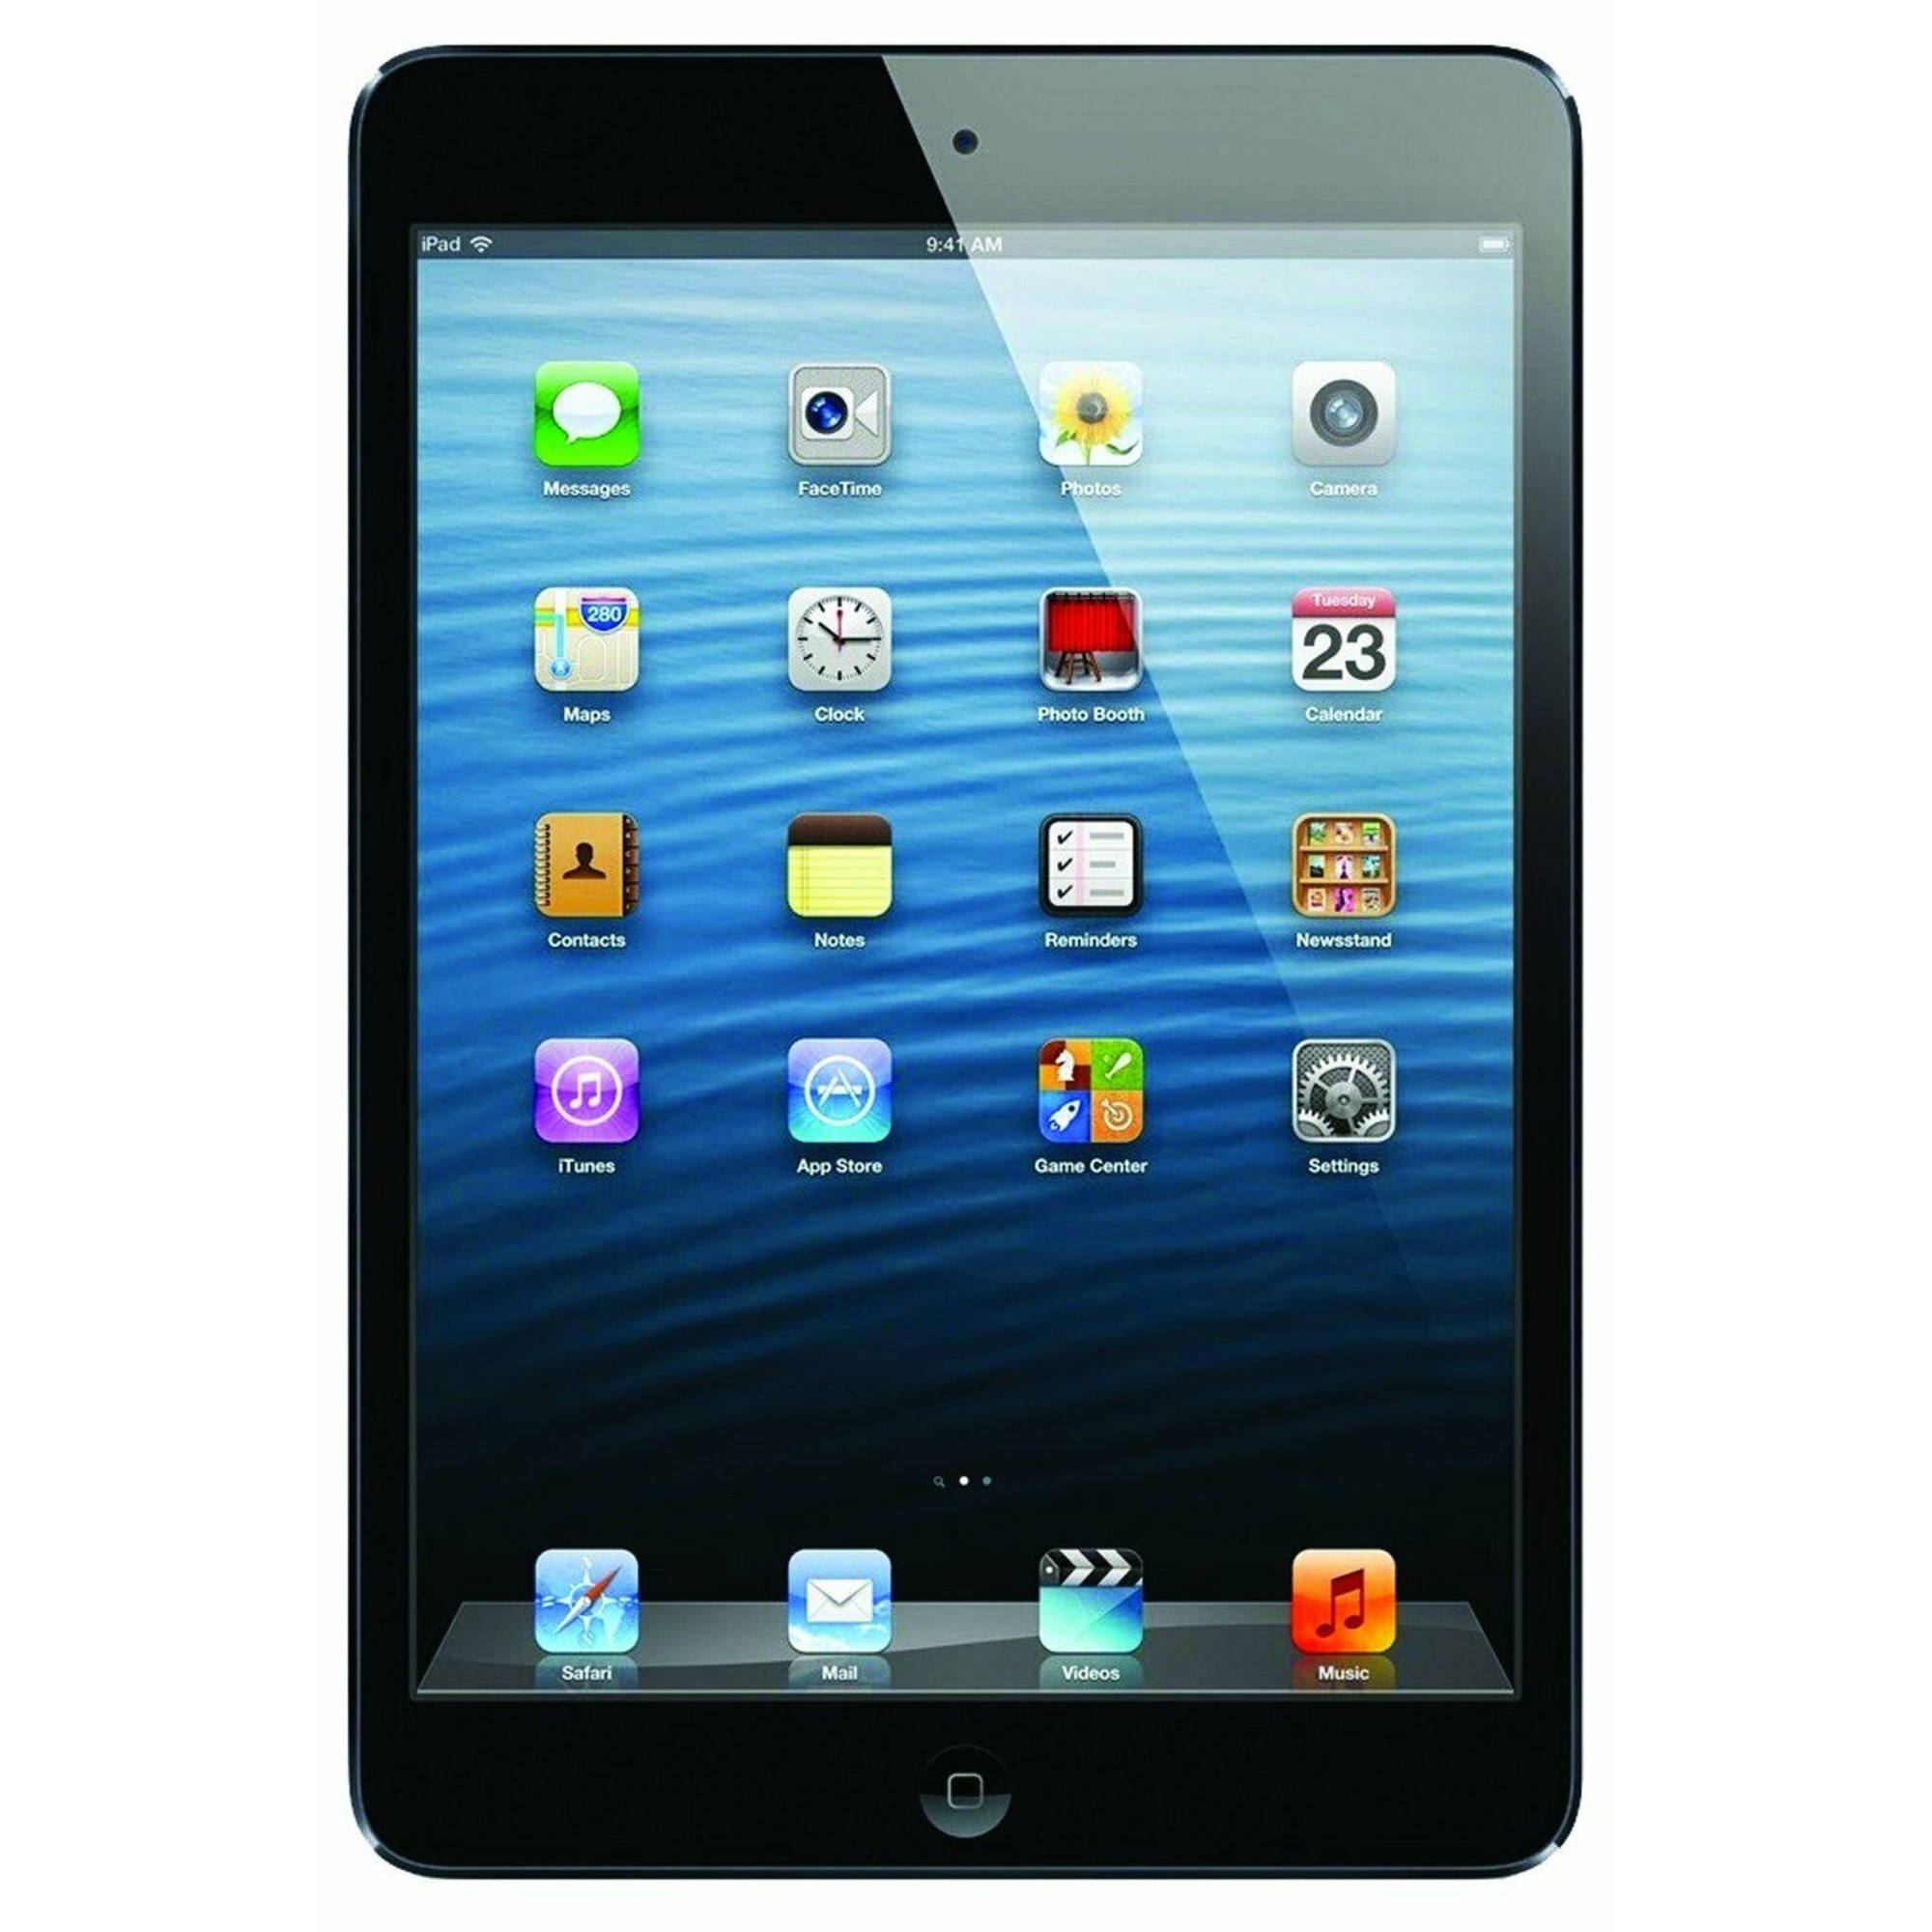 Apple iPad Mini 64GB WiFi Tablet w/ 5MP Camera - Gray | eBay